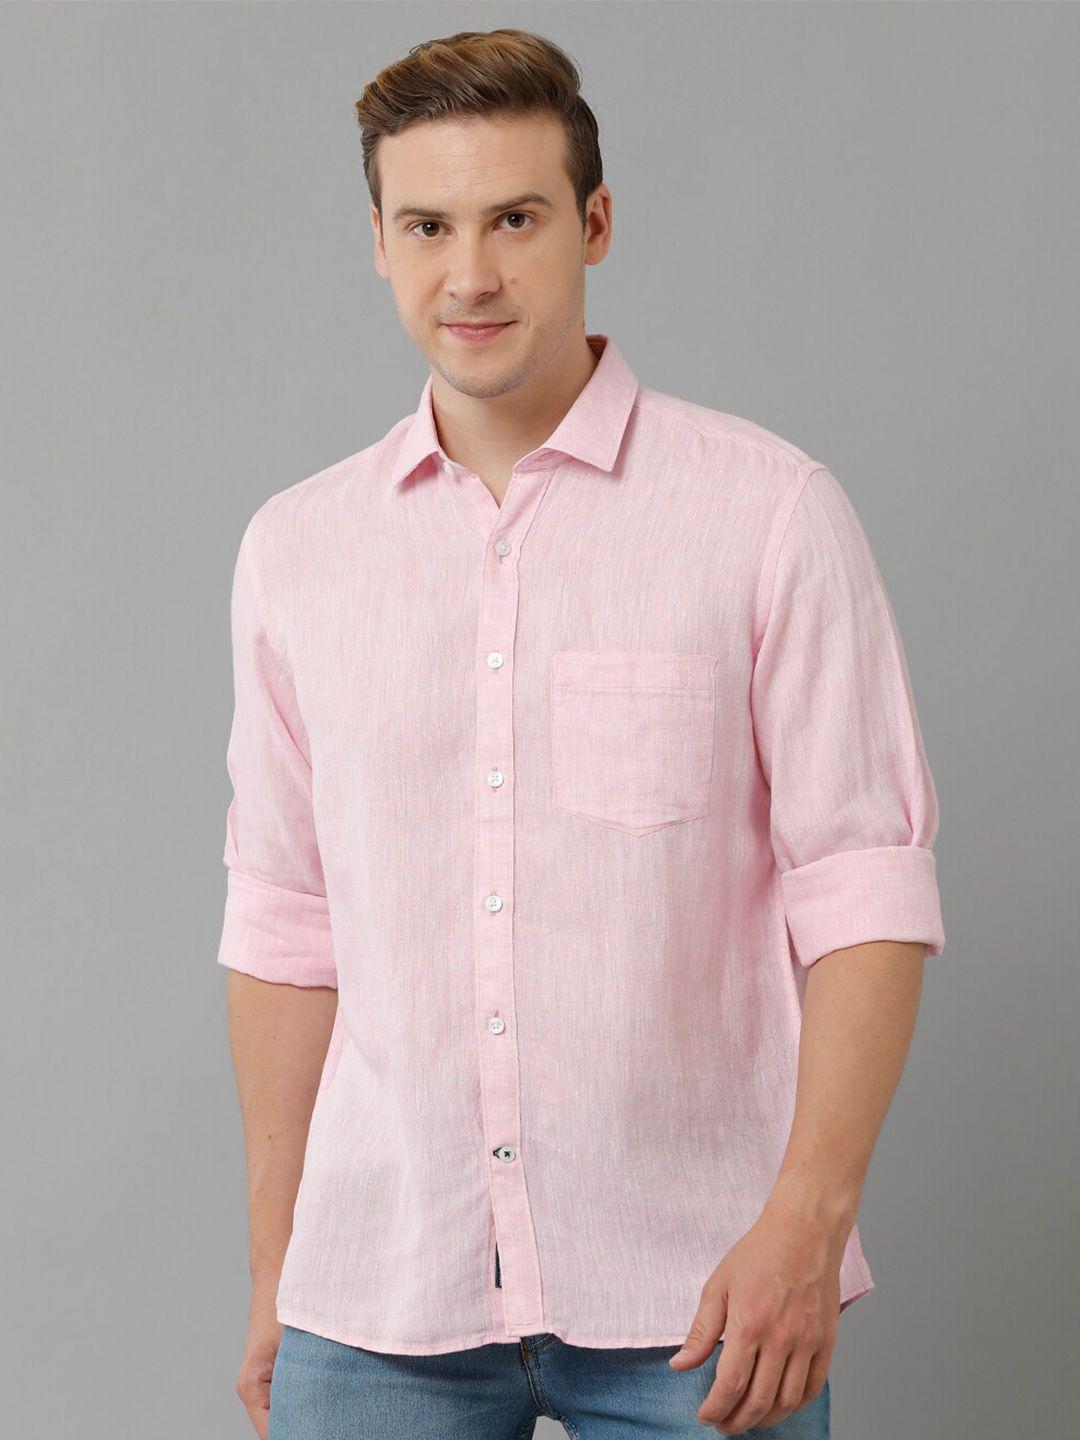 linen-club-spread-collar-pure-linen-casual-shirt